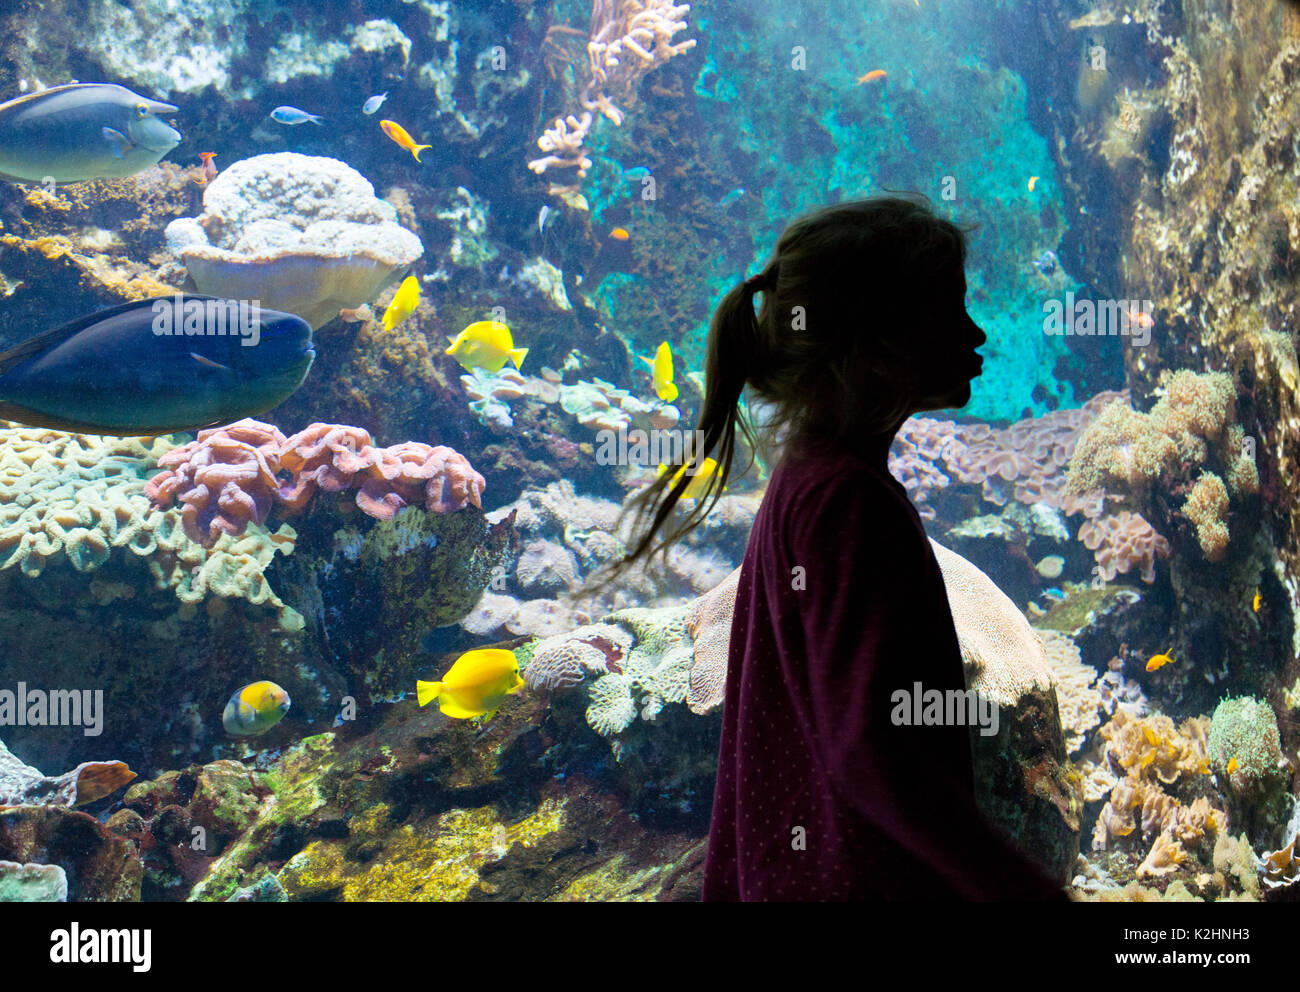 Aquarium - le Grand Aquarium de Saint-Malo, Bretagne, France - une jeune fille en face d'un réservoir de poissons multicolores et de coraux, St Malo, Bretagne France Banque D'Images